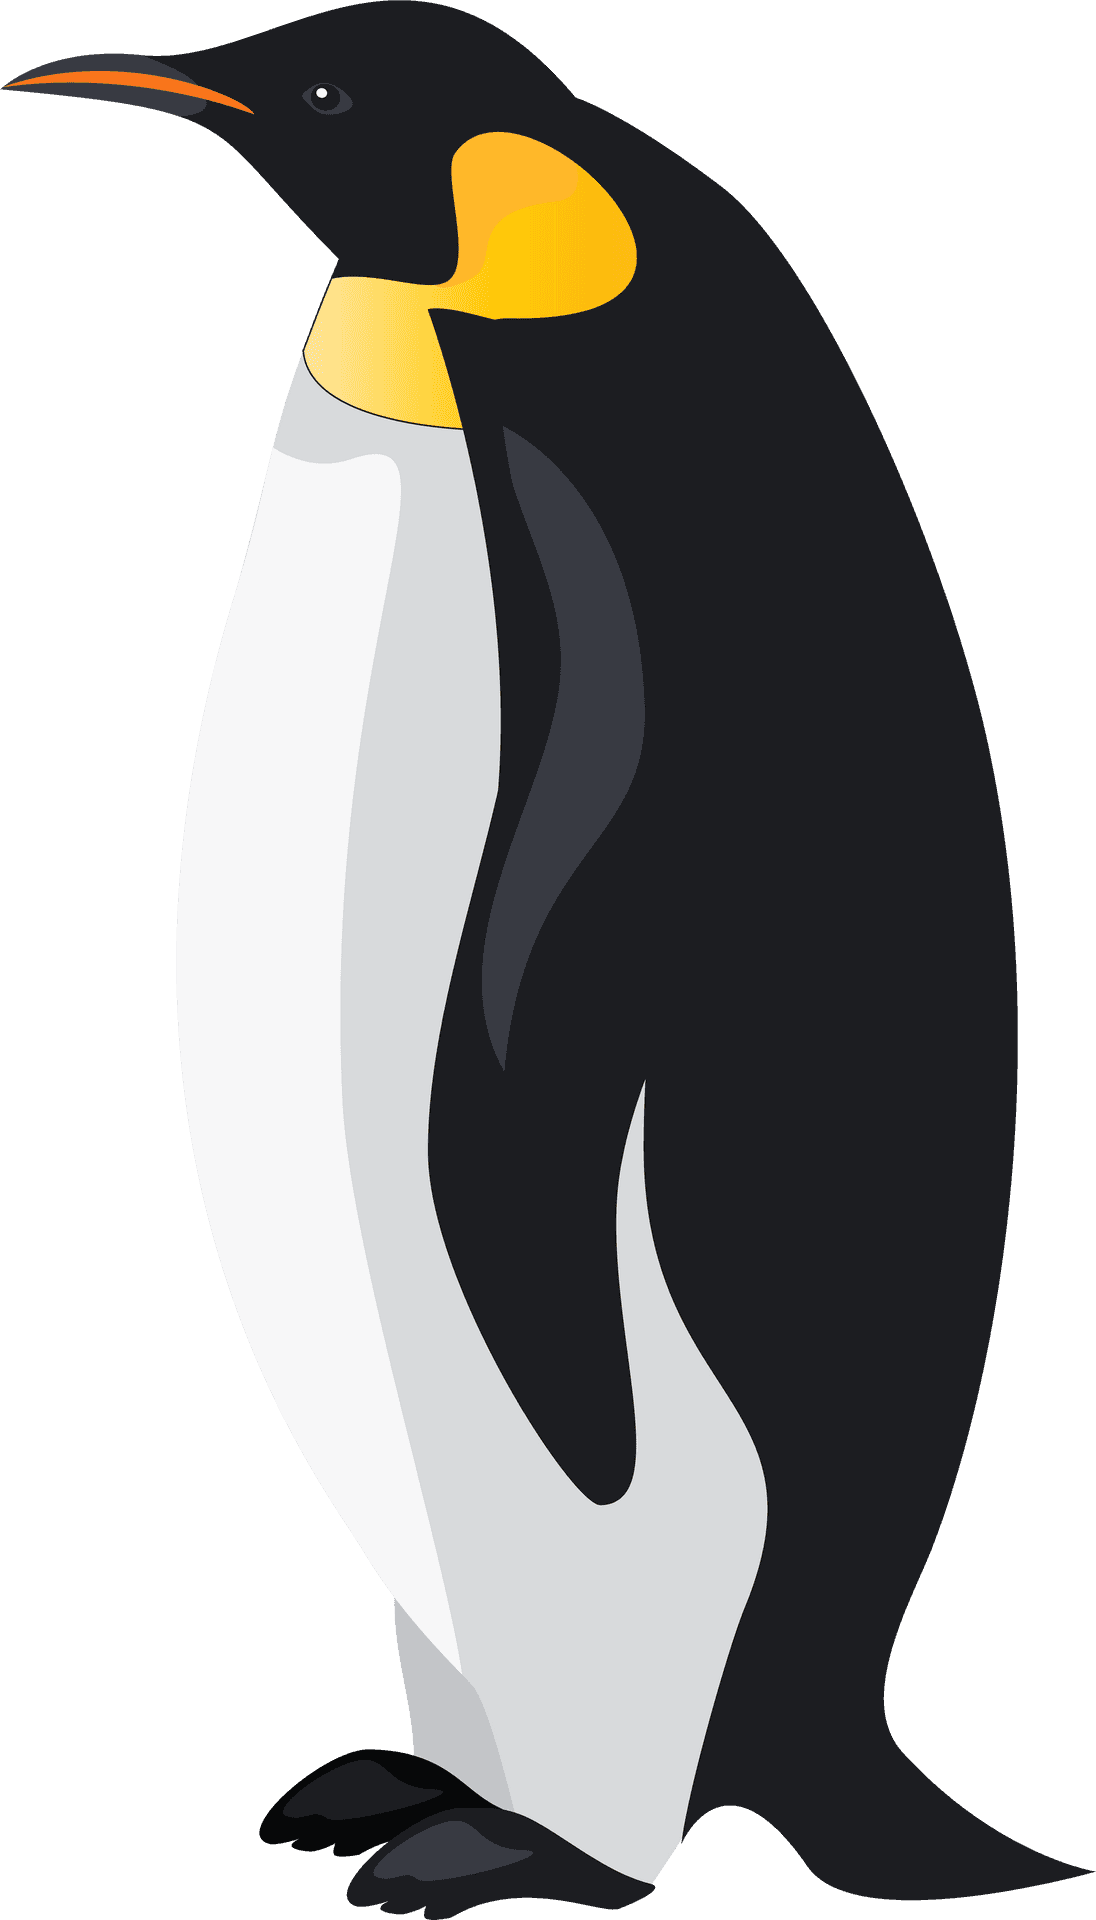 Emperor Penguin Illustration PNG